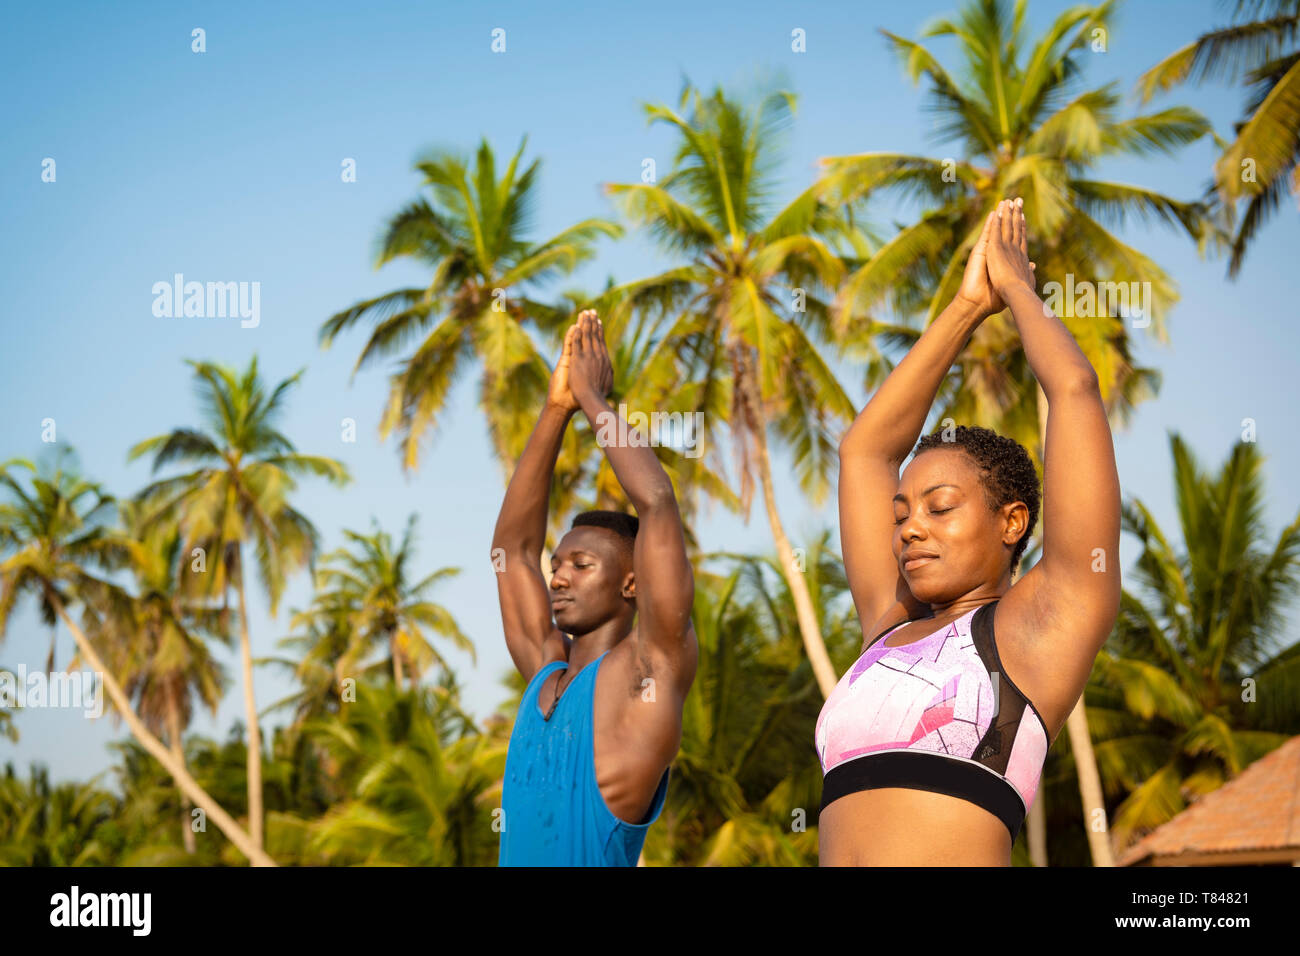 Pareja practicando yoga en la playa Foto de stock